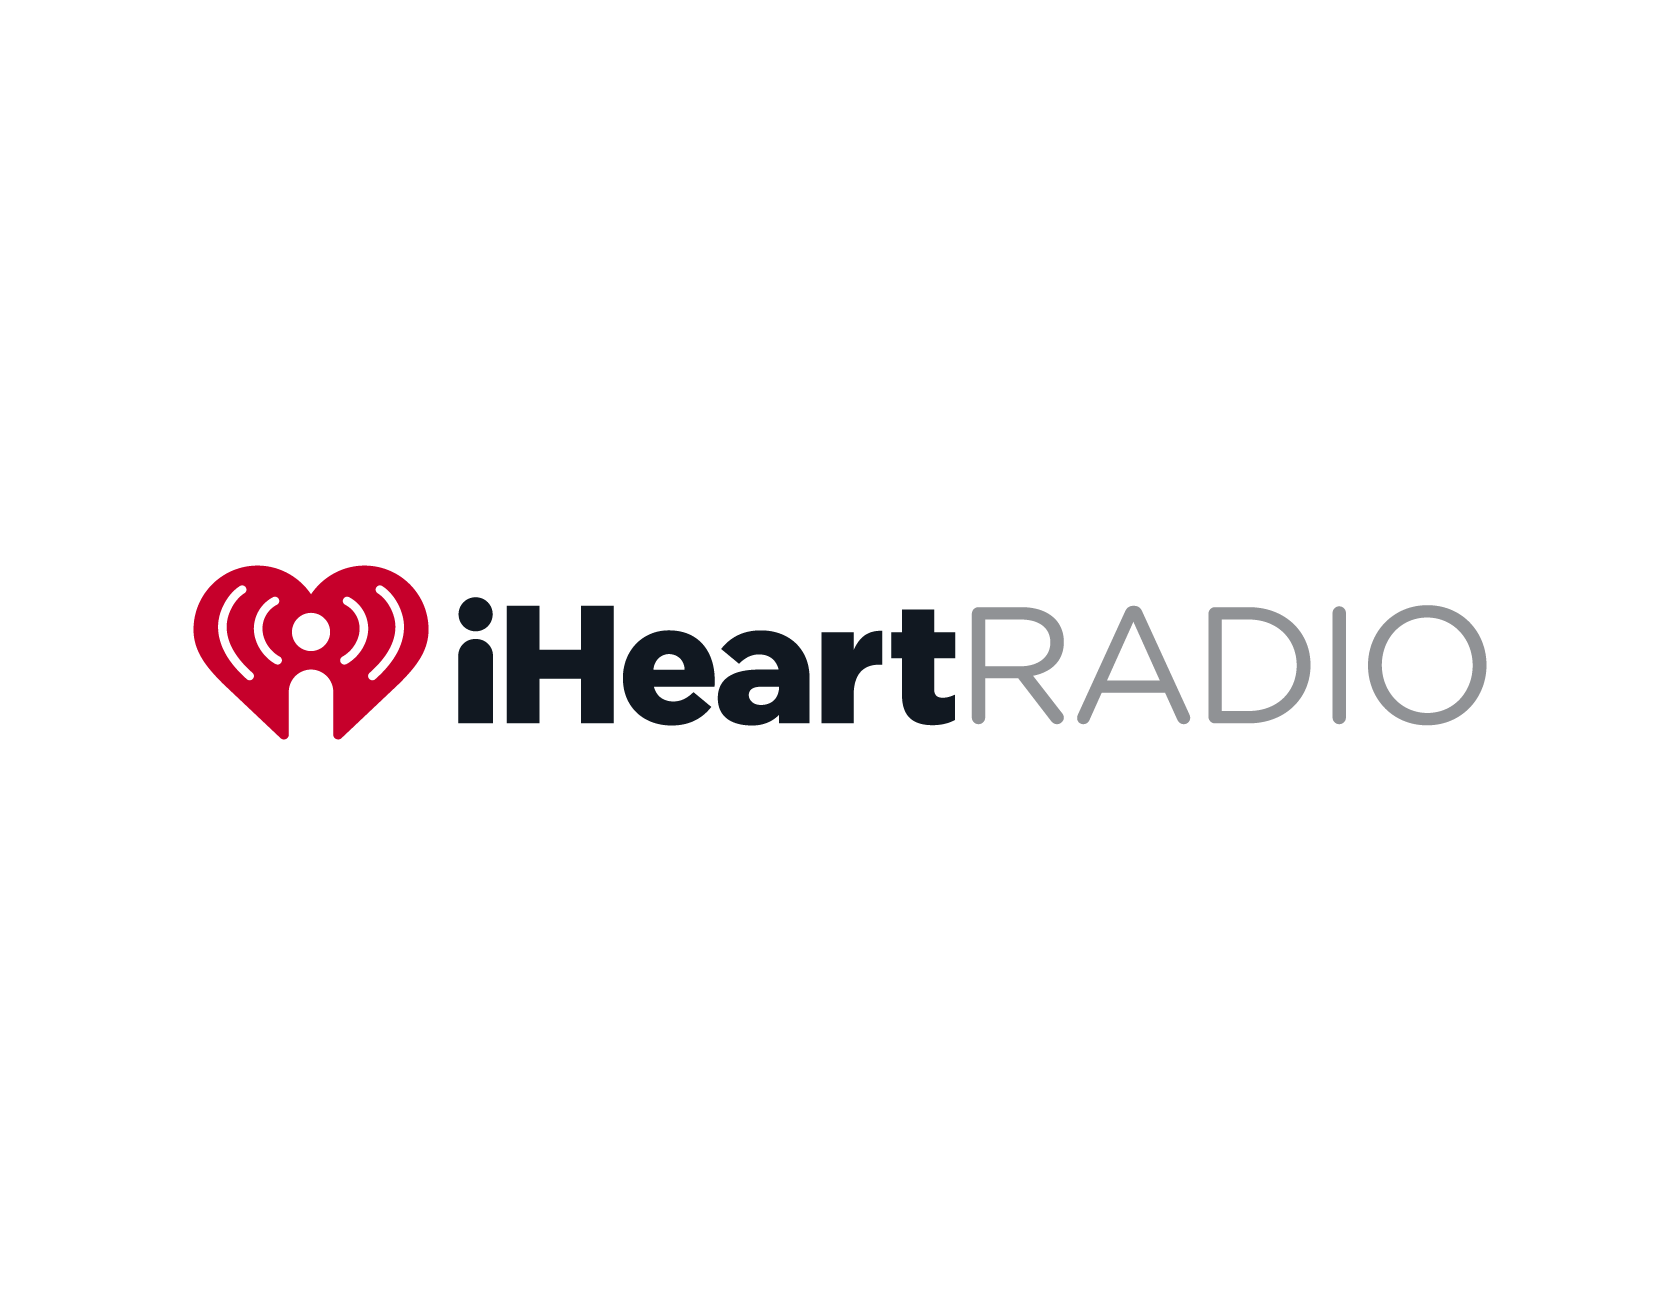 Sube tu música a iHeart Radio completamente gratis